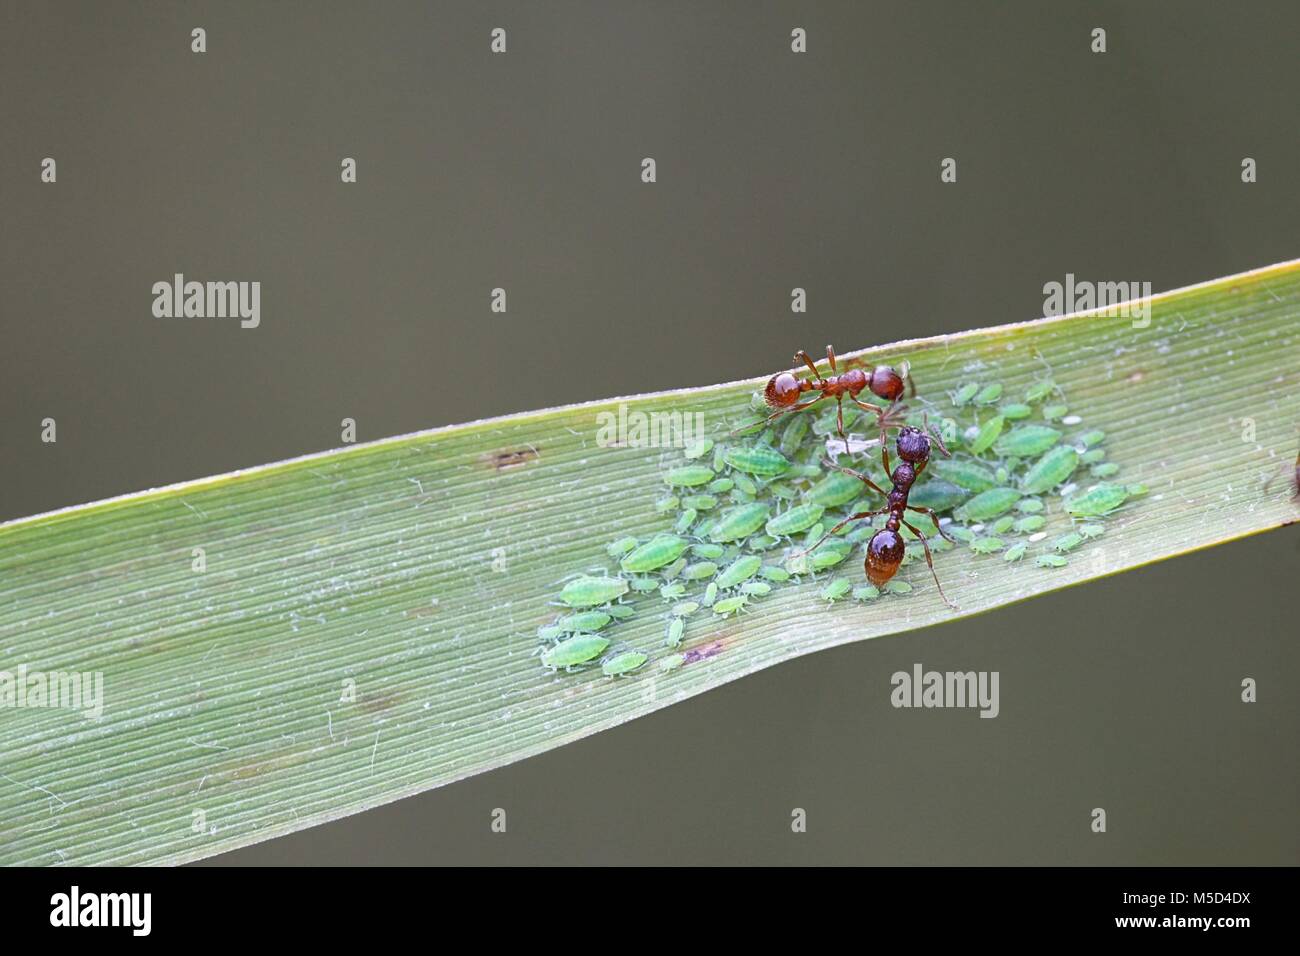 Ameisen hüten Blattläuse Stockfoto